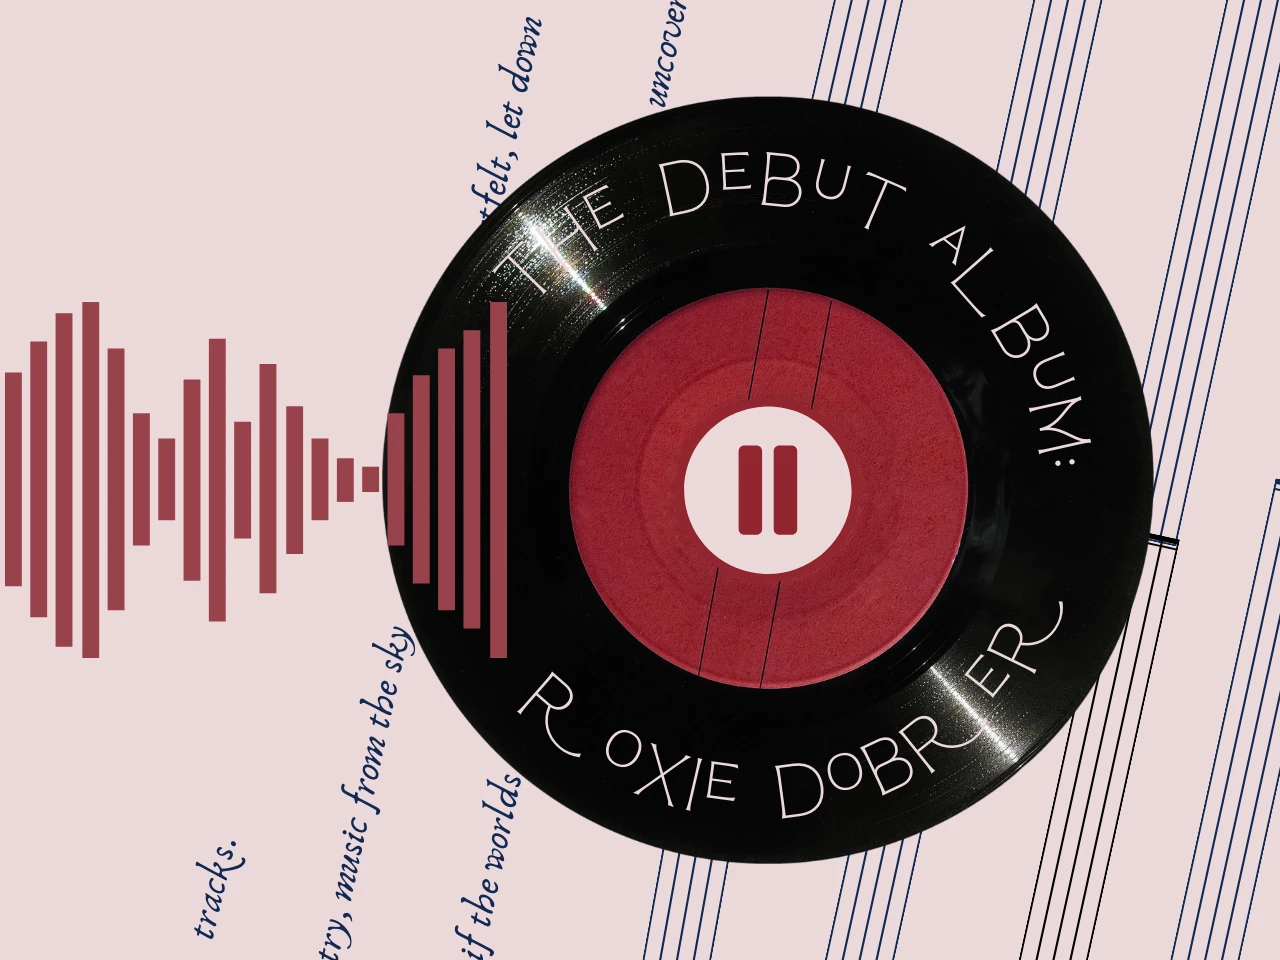 Roxie Dobrer on Writing Her Debut Album